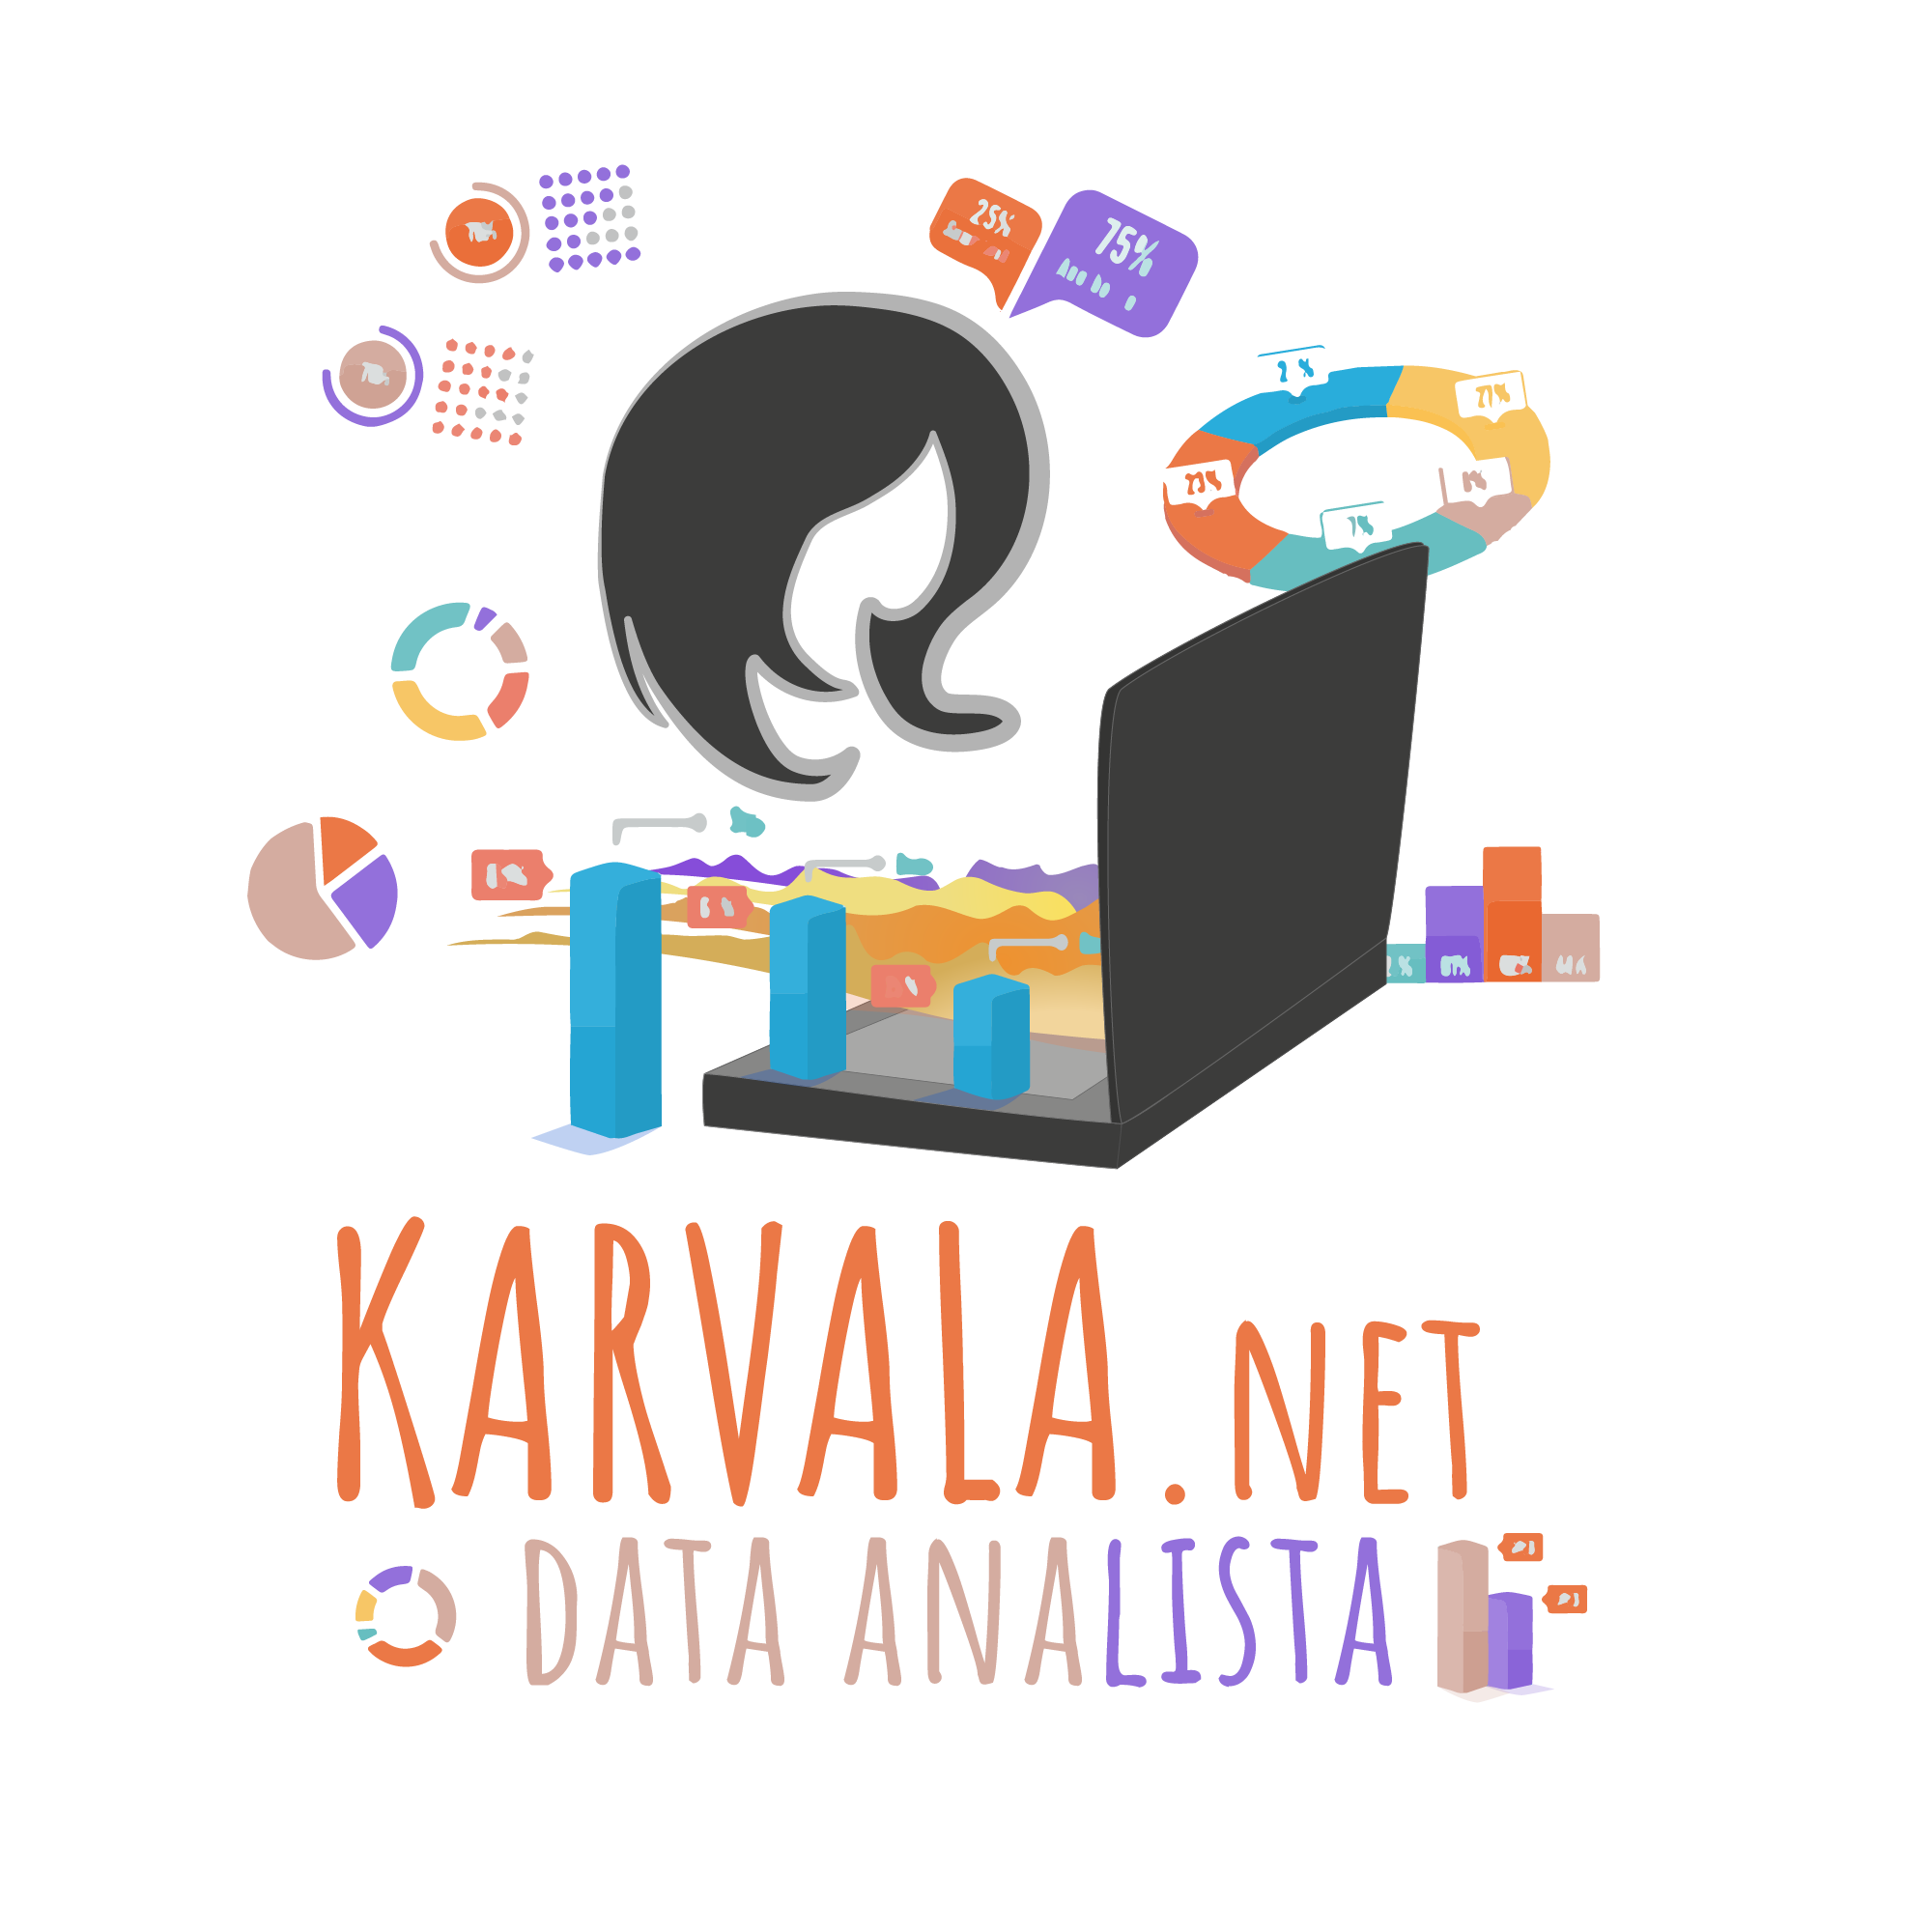 Karvala.Net Data Analista con un avatar mio y un ordenador portátil y varios gráficos